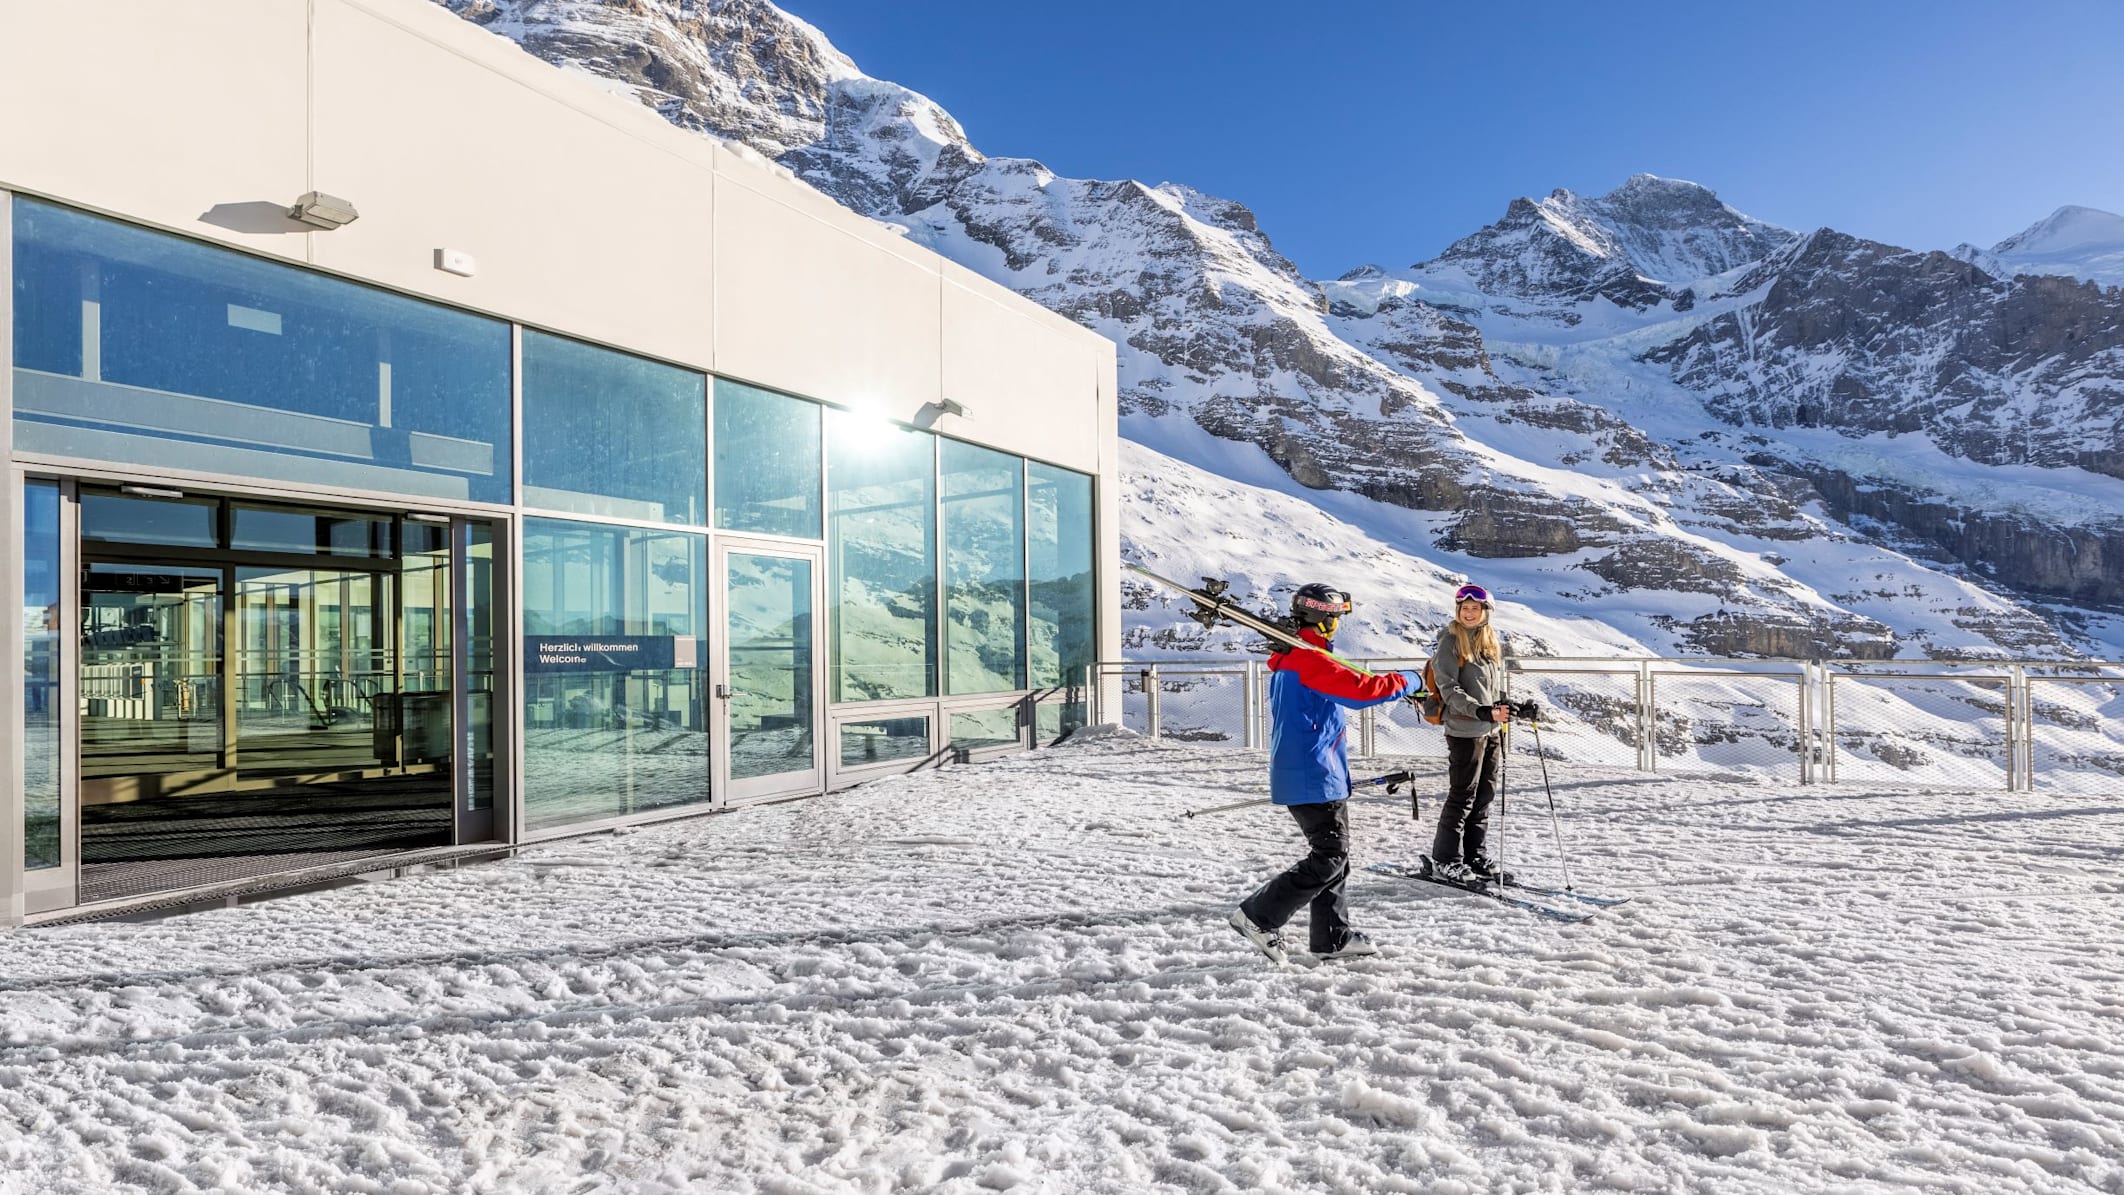 Eigergletscher Ausgang Skipiste Moench Jungfrau kl